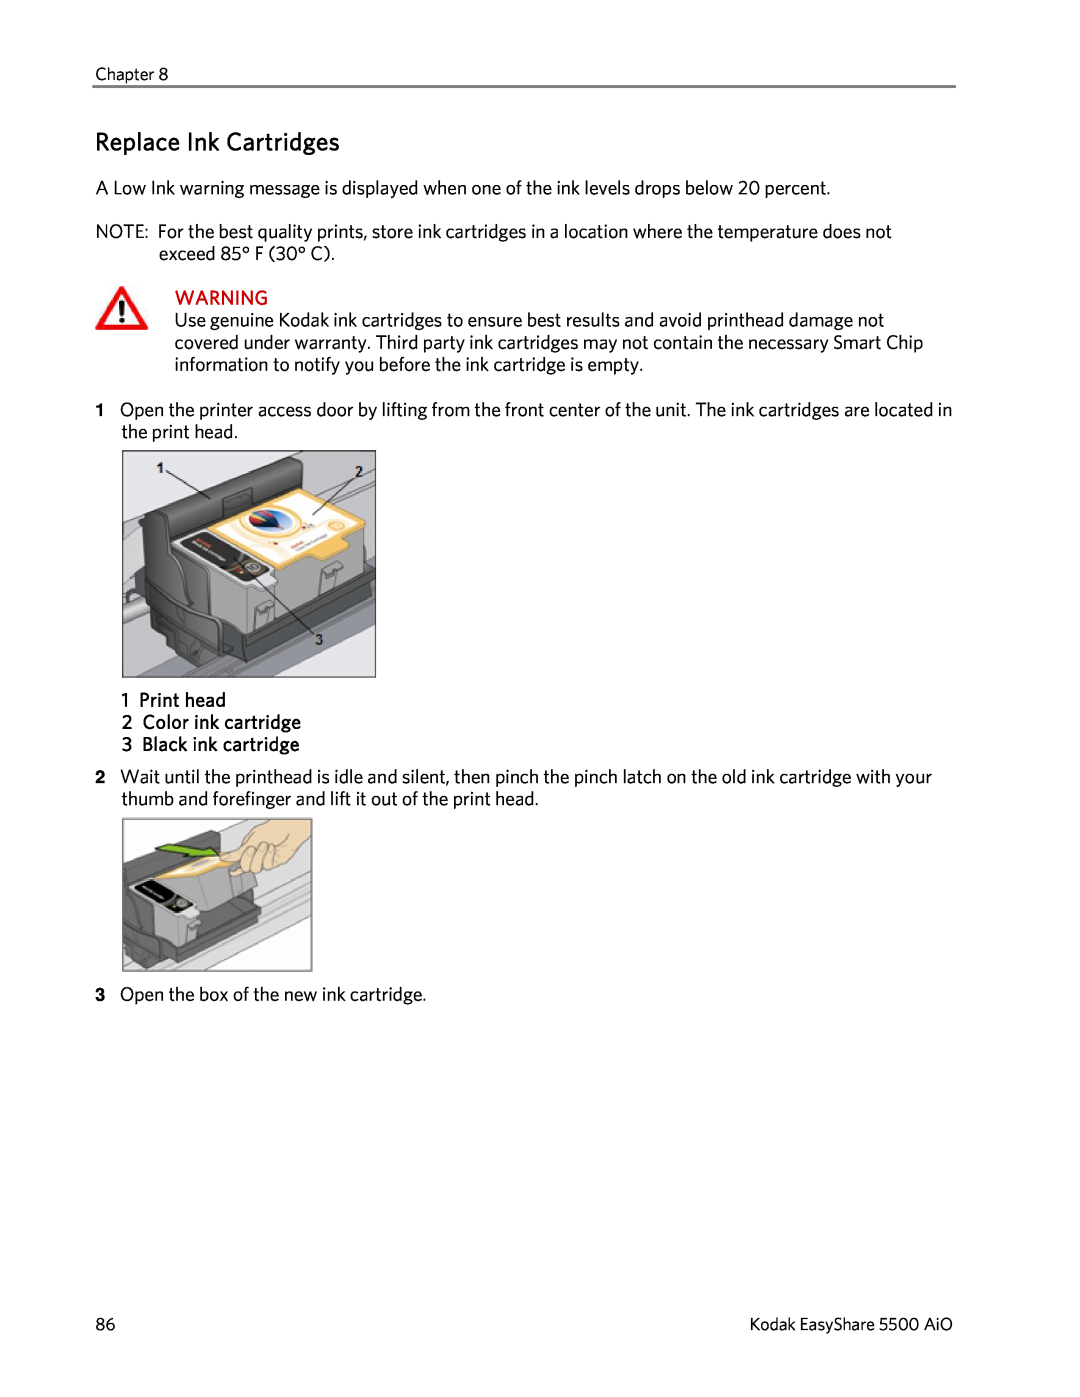 Kodak 5500 manual Replace Ink Cartridges, Print head 2Color ink cartridge, Black ink cartridge 